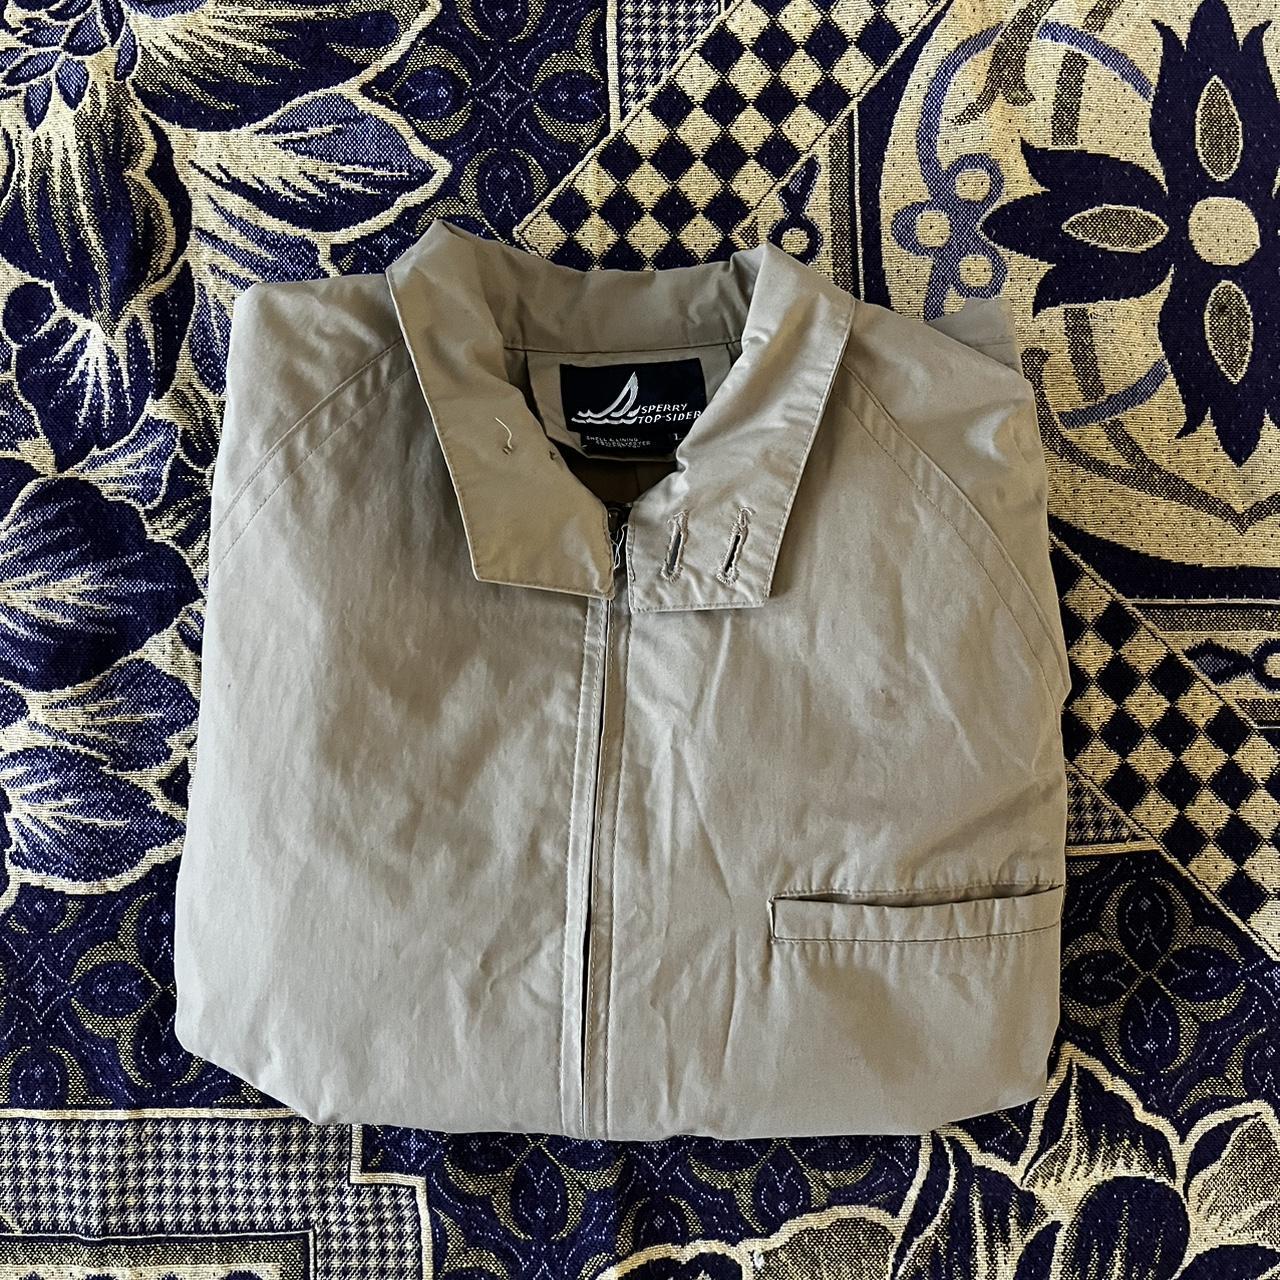 Vintage formal jacket - Depop